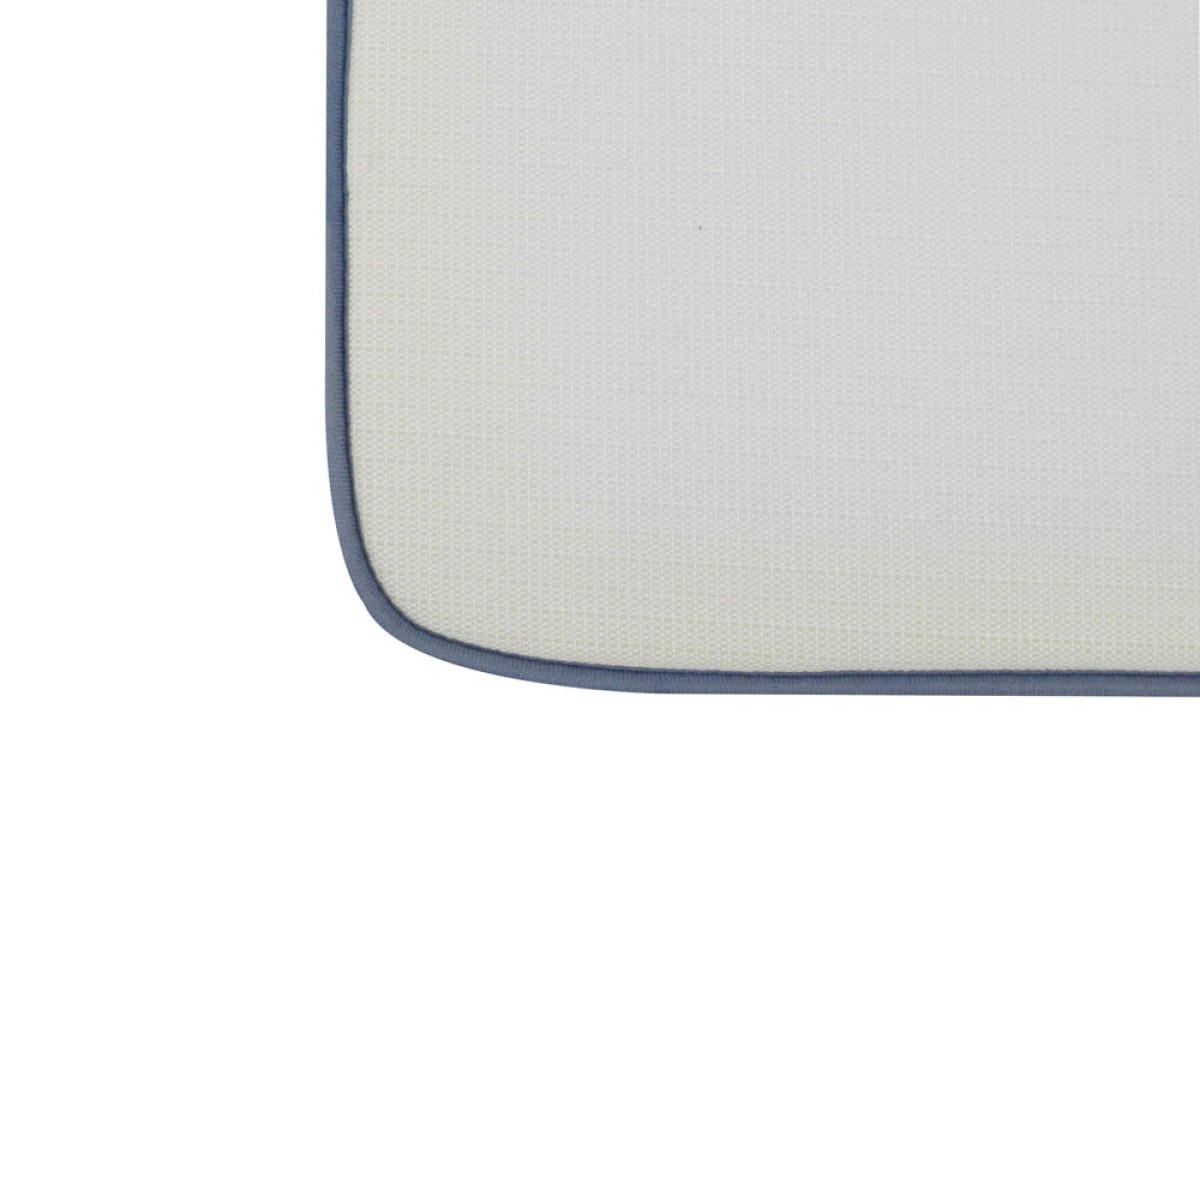 Πατάκι Μπάνιου 50x80cm Αντιολισθητικό με σχέδιο εφέ μαρμάρου σε γκρι χρώμα Sidirela Marble E-8260-56